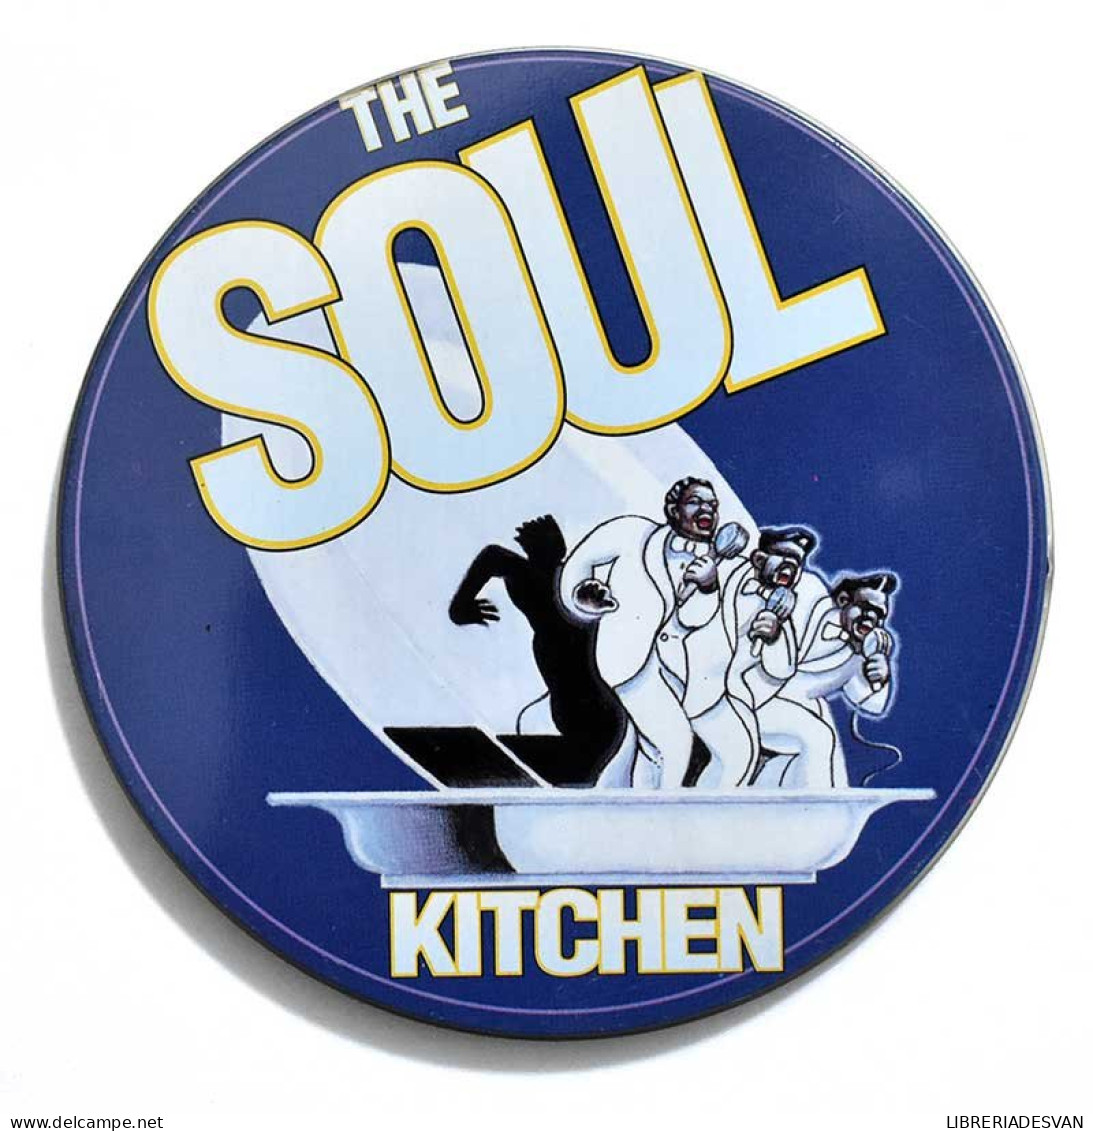 The Soul Kitchen. CD - Jazz